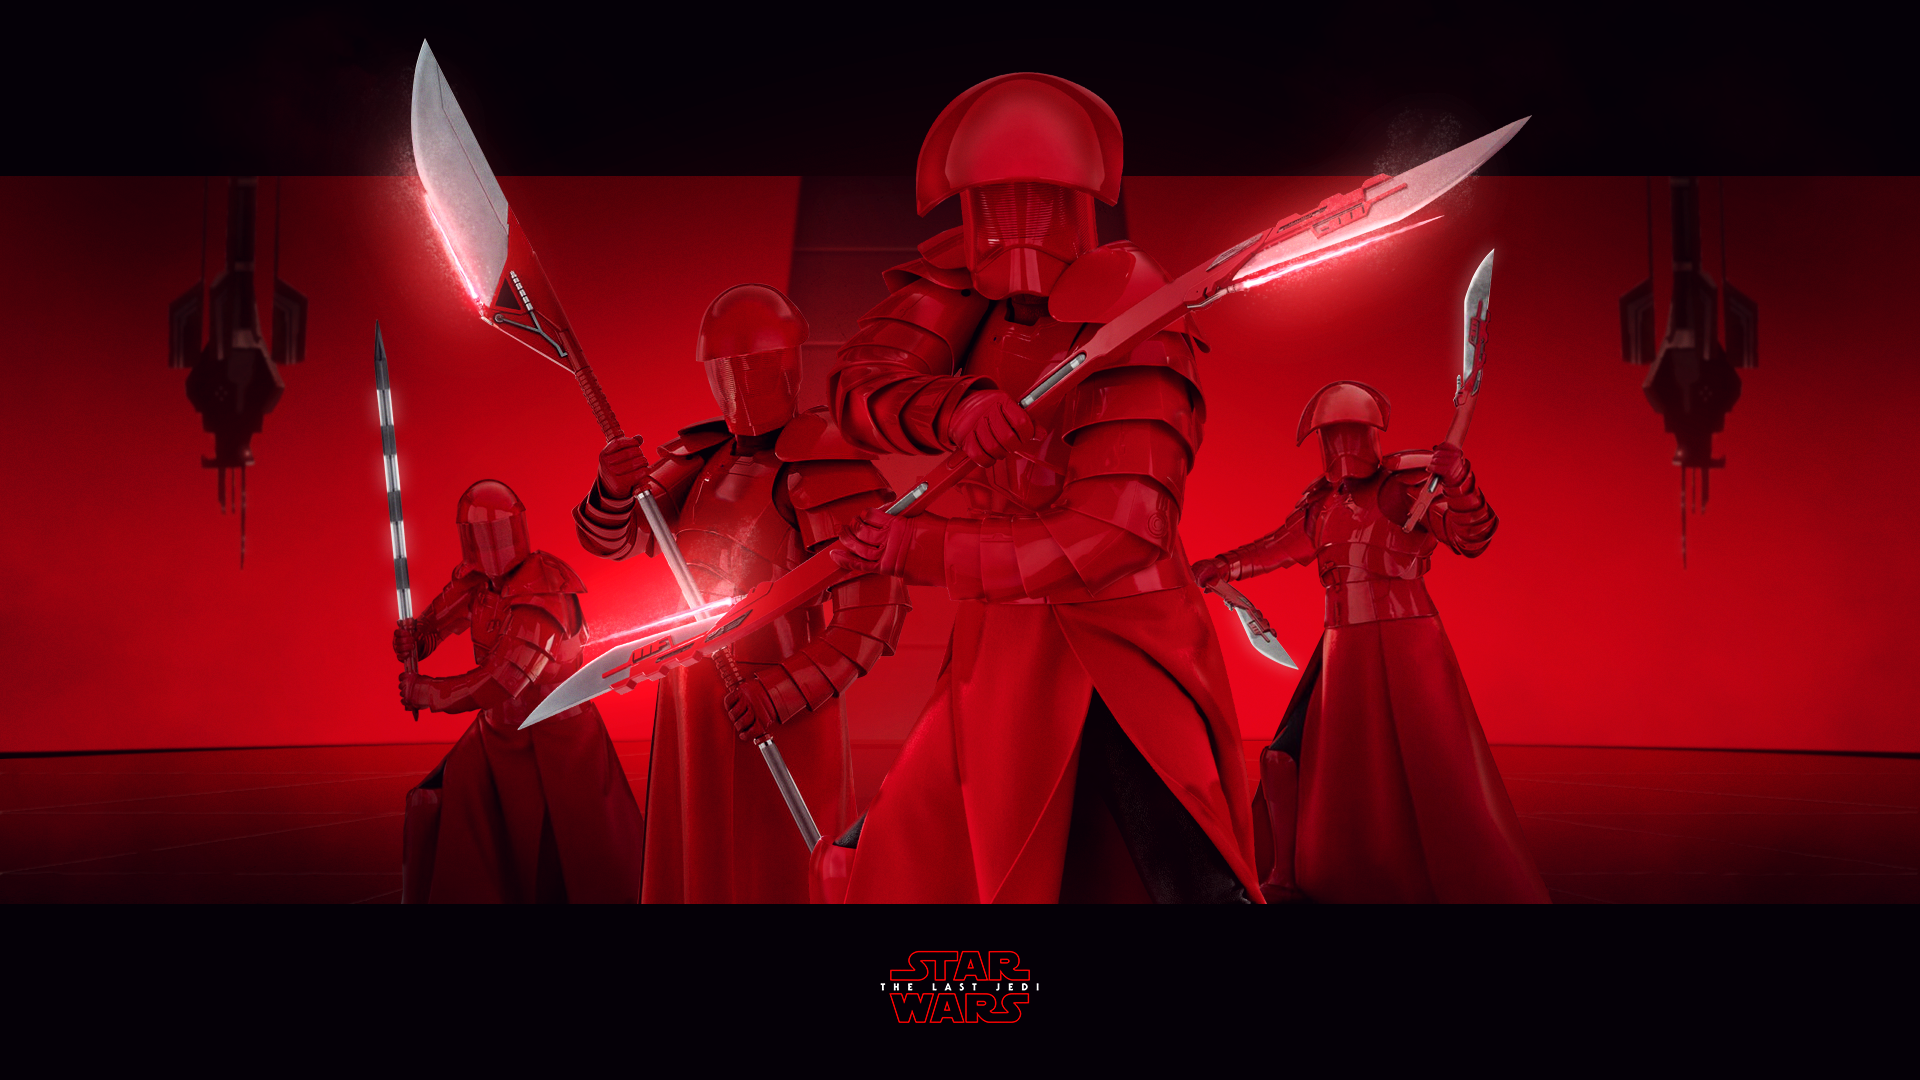 General 1920x1080 Star Wars Star Wars: The Last Jedi red The First Order movies digital art low light